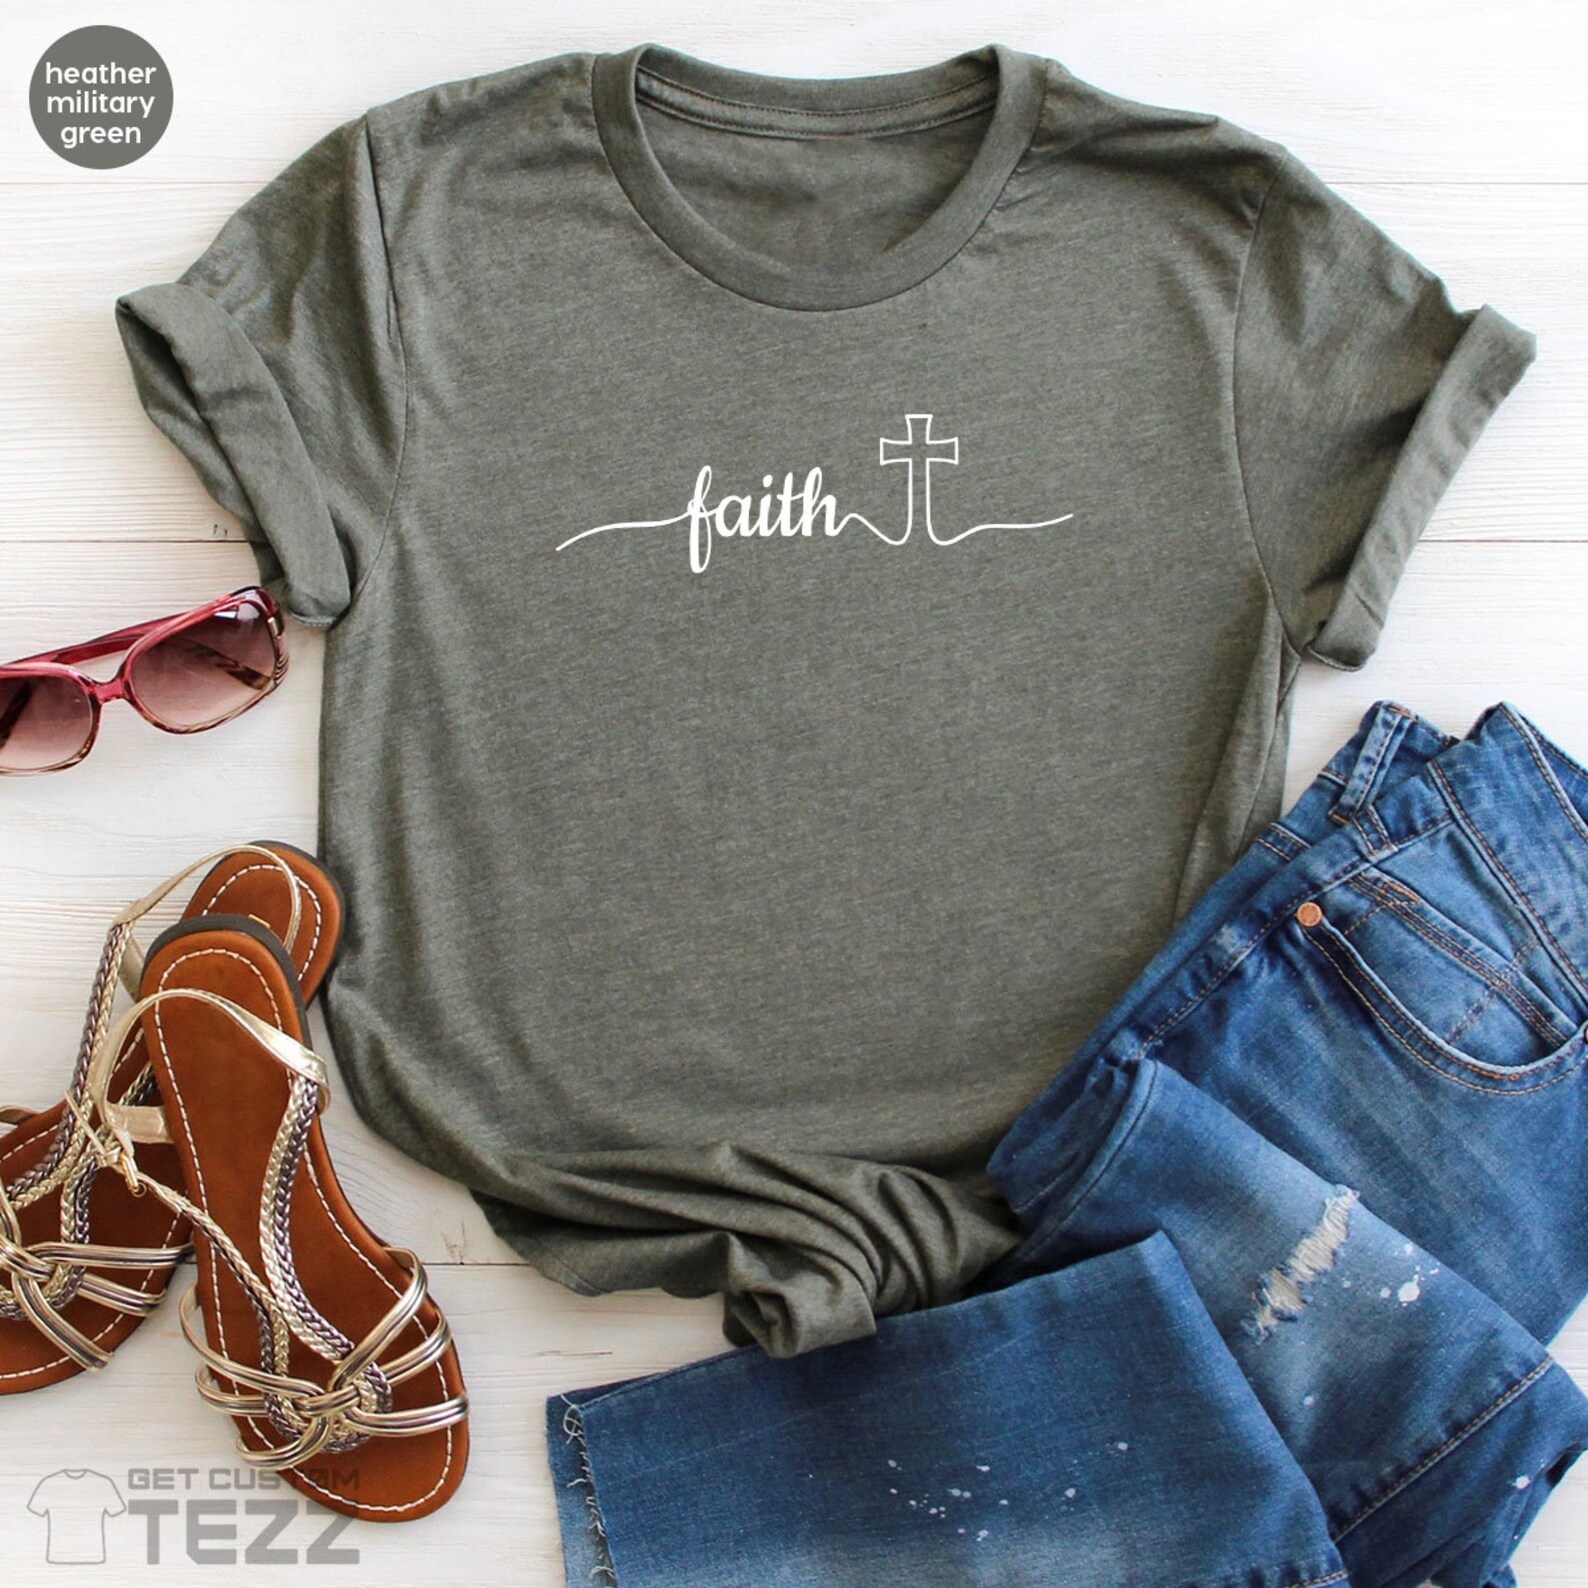 Faith Cross Shirt Vertical Cross Shirt Religious Shirt - Etsy